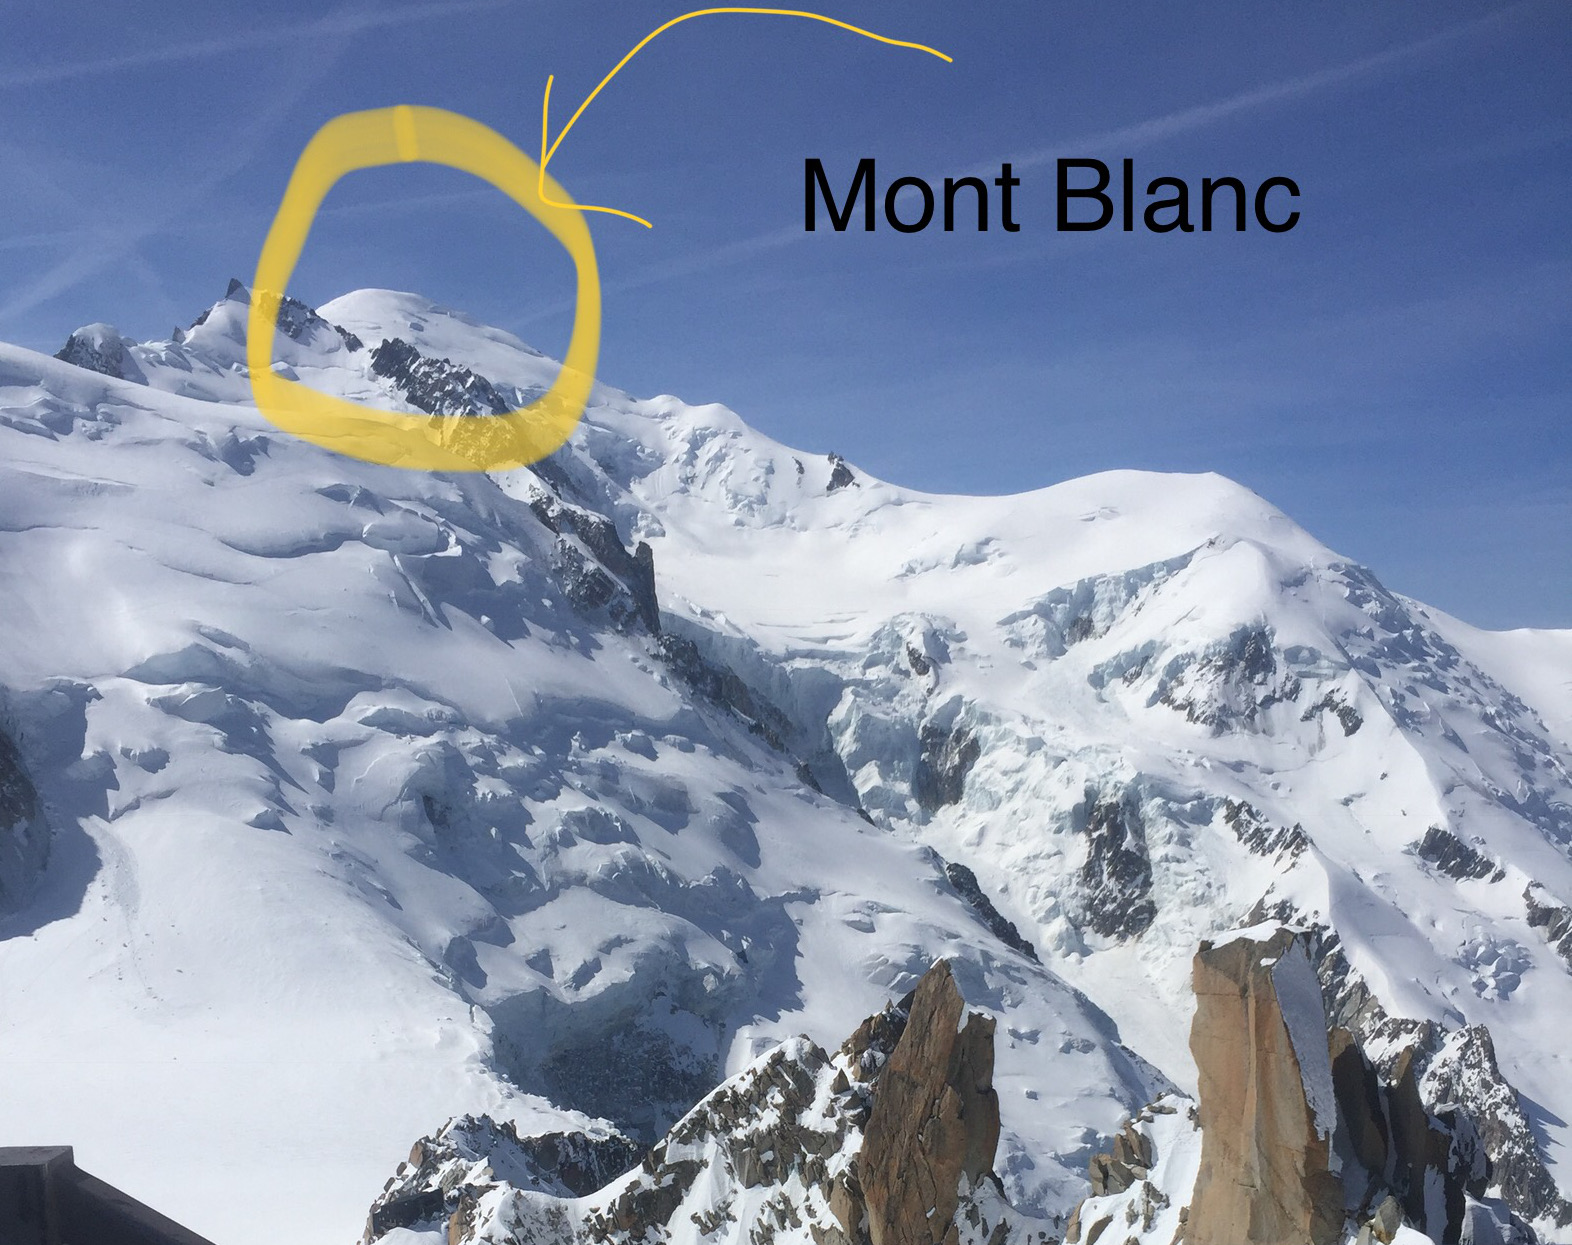 Les Houches - Mont Blanc